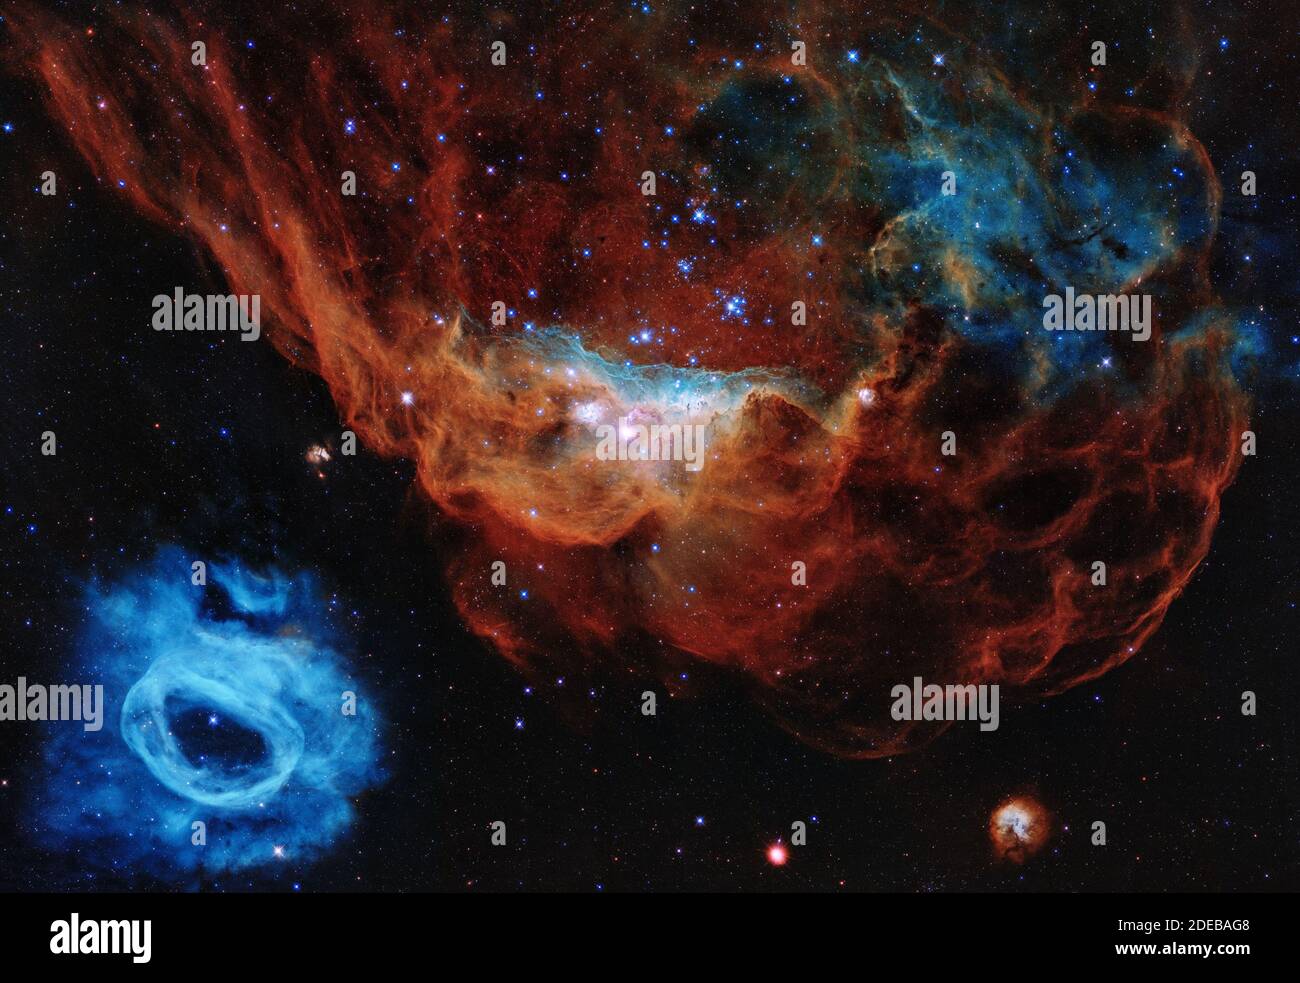 Questa immagine è uno degli esempi più fotogenici dei molti vivai stellari turbolenti che il telescopio spaziale Hubble della NASA/ESA ha osservato durante i suoi 30 anni di vita. Il ritratto presenta la nebulosa gigante NGC 2014 e il suo vicino NGC 2020, che insieme fanno parte di una vasta regione formante stelle nella grande Nuvola Magellanica, una galassia satellitare della Via Lattea, a circa 163,000 anni luce di distanza. L'immagine è soprannominata la "barriera Cosmica" perché assomiglia ad un mondo sottomarino. NASA/ESA/UPI Foto Stock